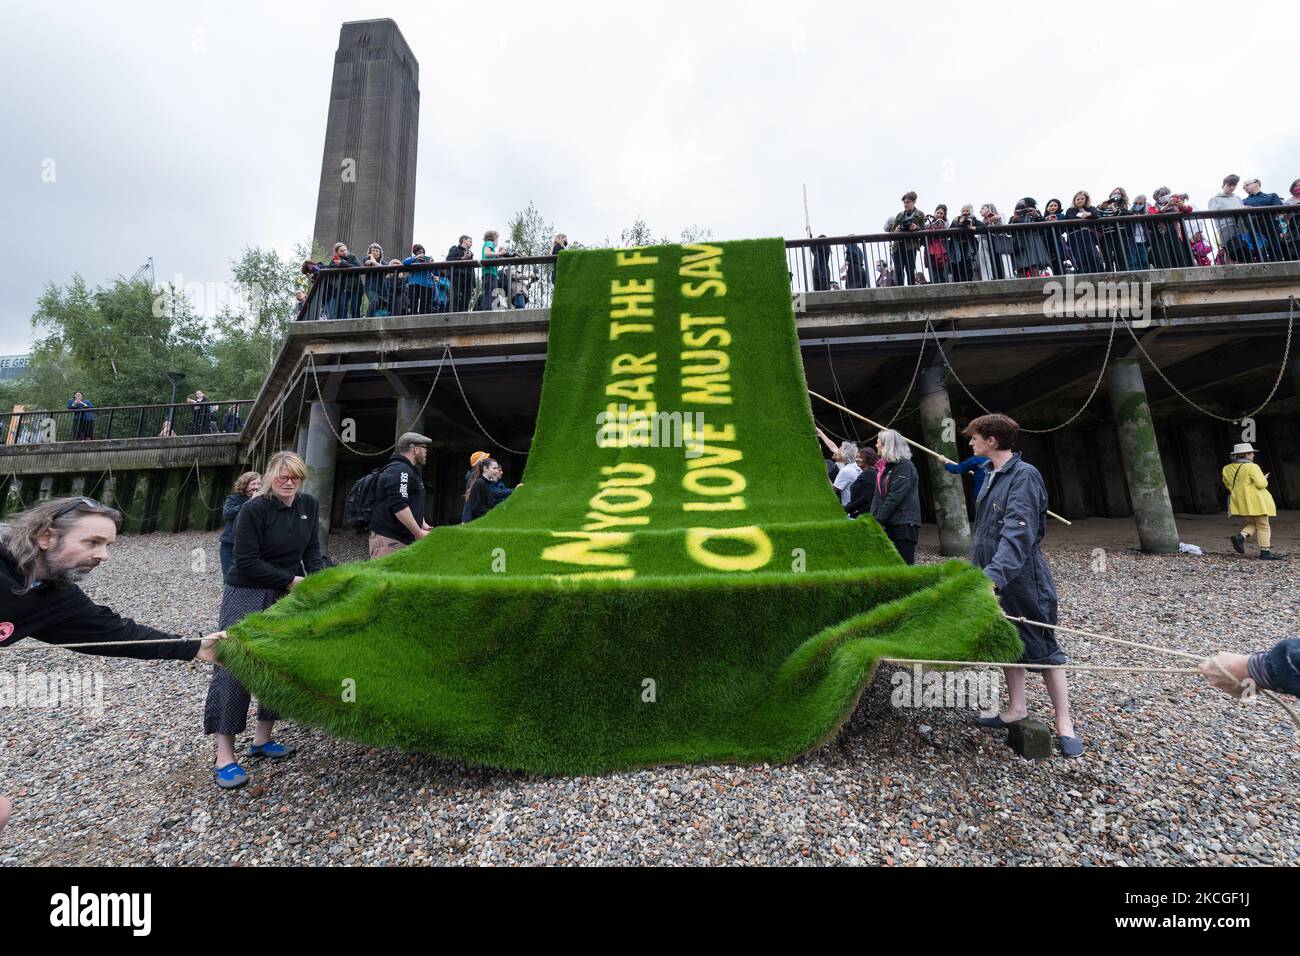 LONDON, VEREINIGTES KÖNIGREICH - 25. JUNI 2021: Aktivisten des Extinction Rebellion tragen ein Banner mit einer auf lebendigem Gras gewachsenen Botschaft am Ufer der Themse vor der Tate Modern, um am 25. Juni 2021 in London, England, auf die klimatischen und ökologischen Notsituationen aufmerksam zu machen. Das von den gefeierten Künstler-Aktivisten Ackroyd & Harvey geschaffene Banner mit einem Appell des Booker-Preisträgers Ben Okri ruft Regierungen auf der ganzen Welt dazu auf, im Hinblick auf den Gipfel COP26 mit Dringlichkeit zu handeln, um den durch die globale Erwärmung verursachten Klima- und ökologischen Kollaps zu verhindern. (Foto von Wiktor Szymanowicz/NurPhoto) Stockfoto